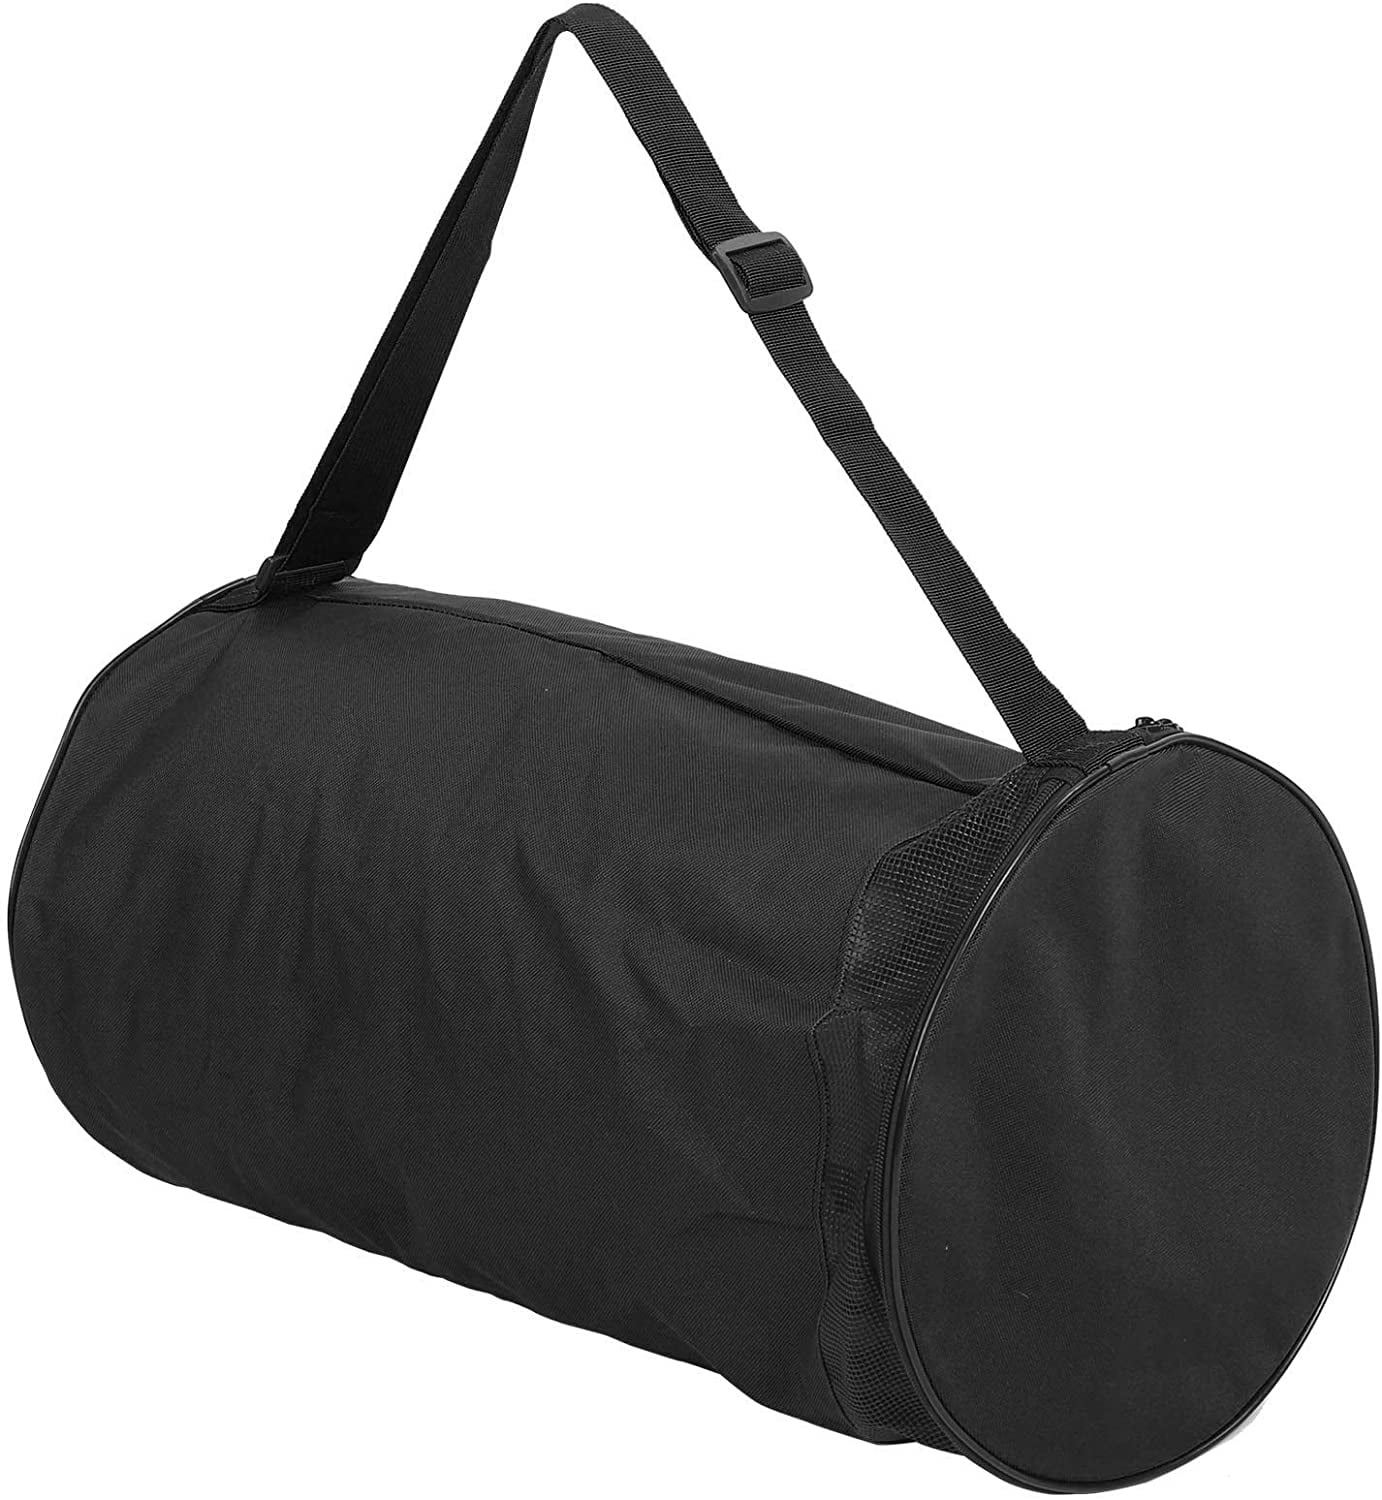 Basketball Carrying Bag Single‑Shoulder Storage Carrier Bag For 2 Basketballs 